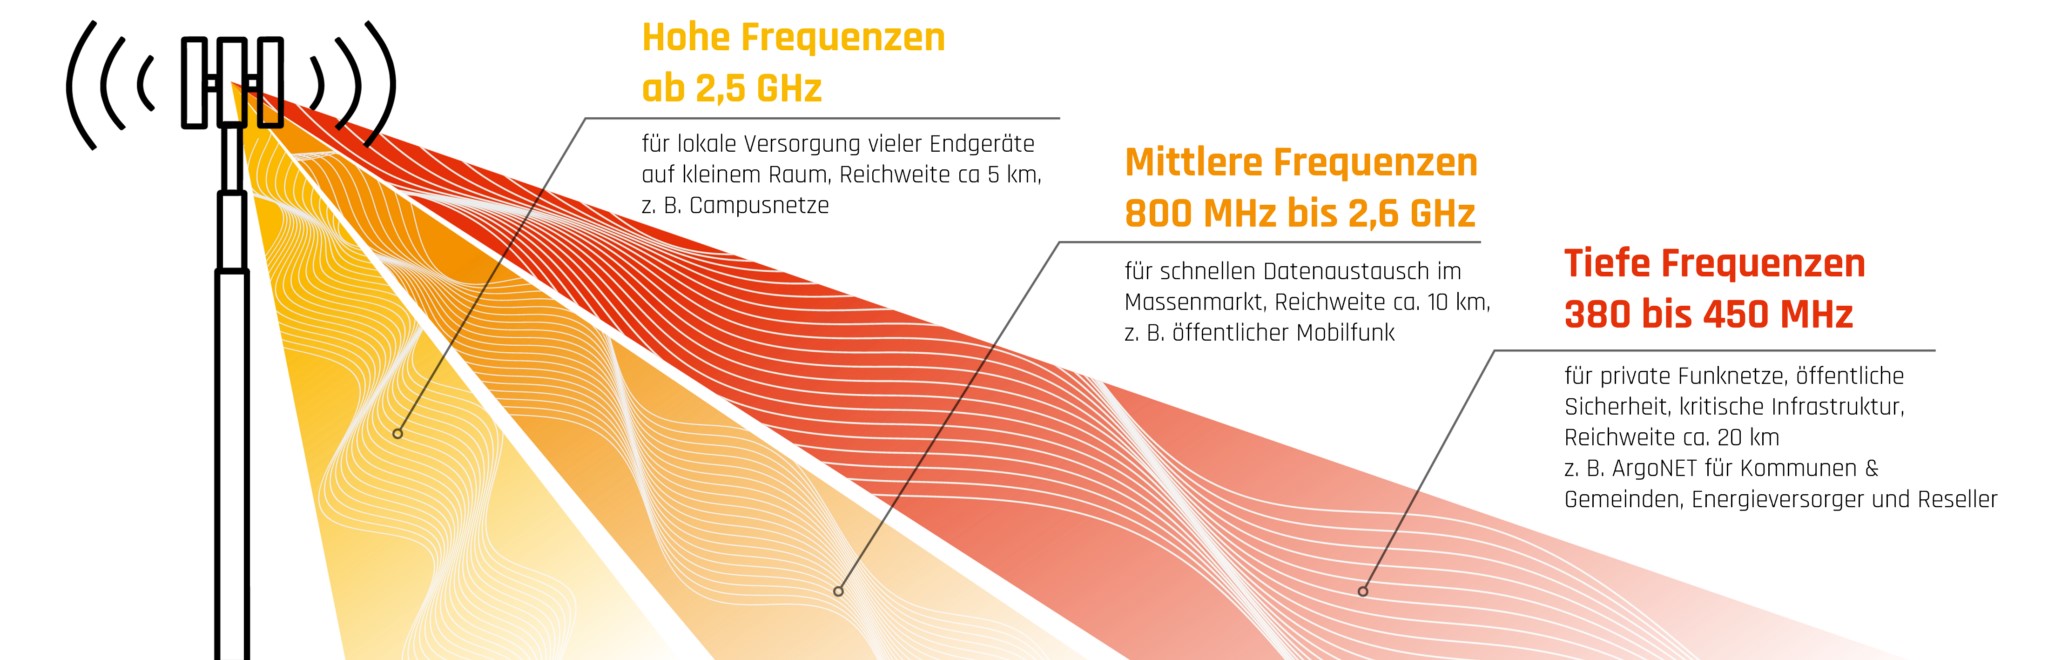 450 MHz Funkfrequenz im Vergleich